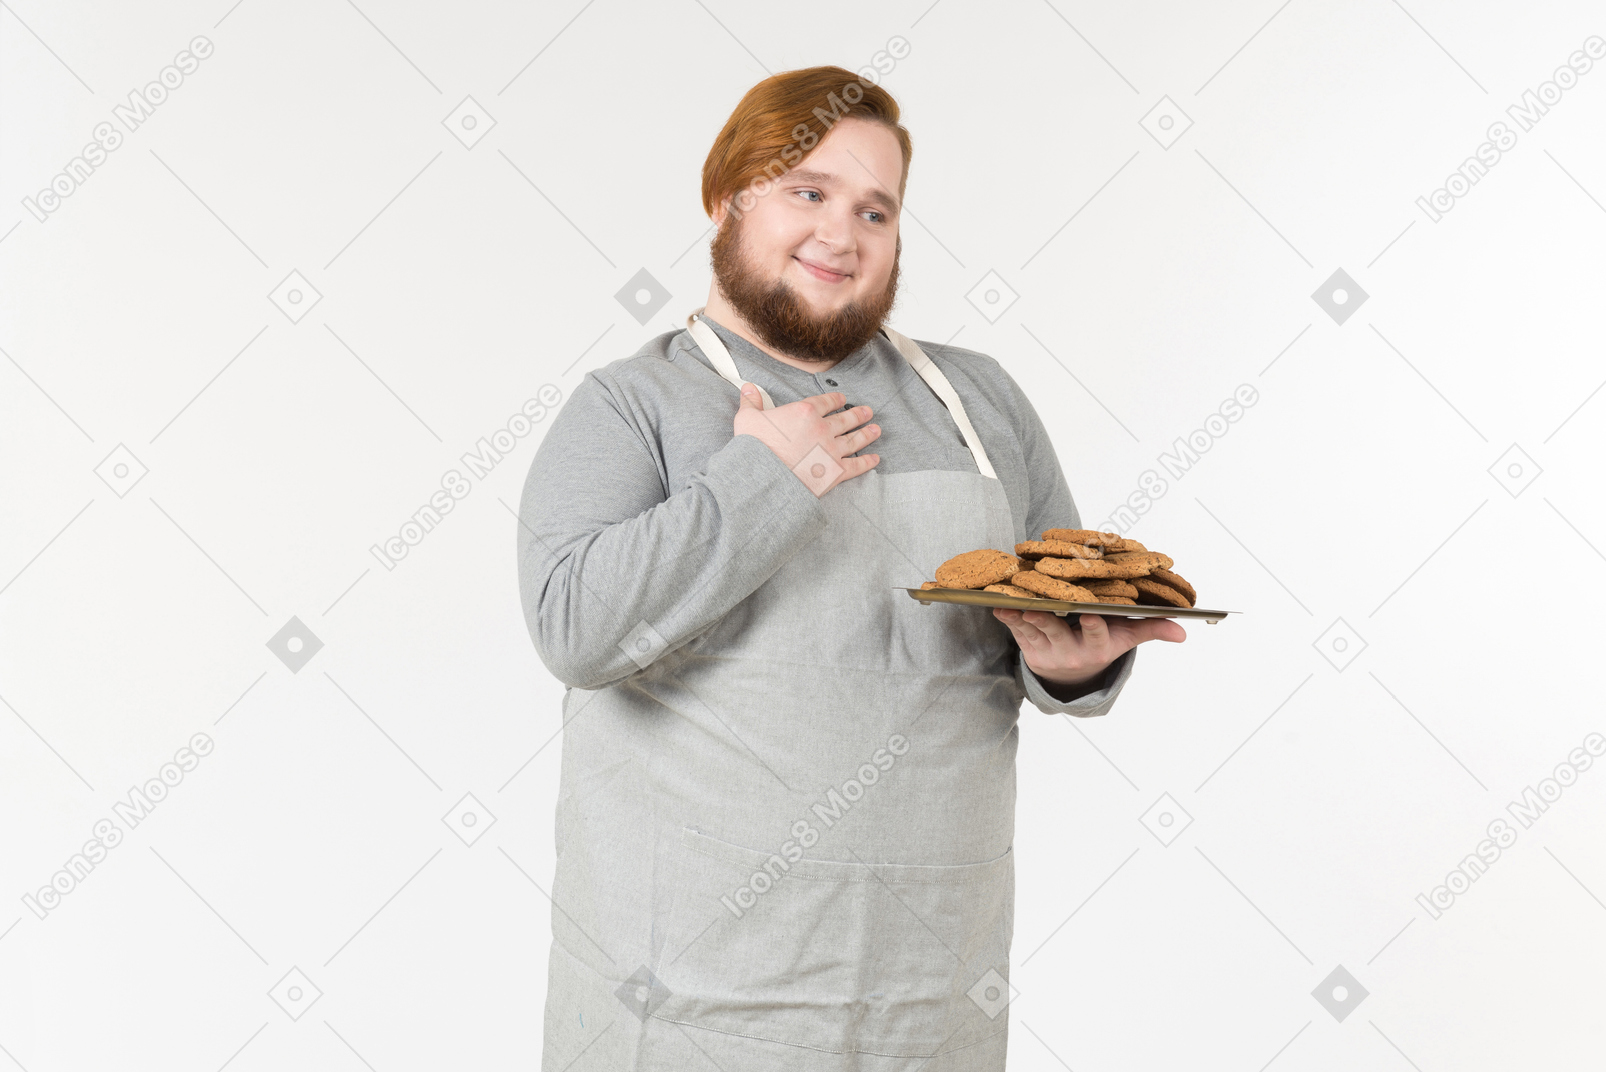 Un panadero gordo con un plato de galletas que parece satisfecho